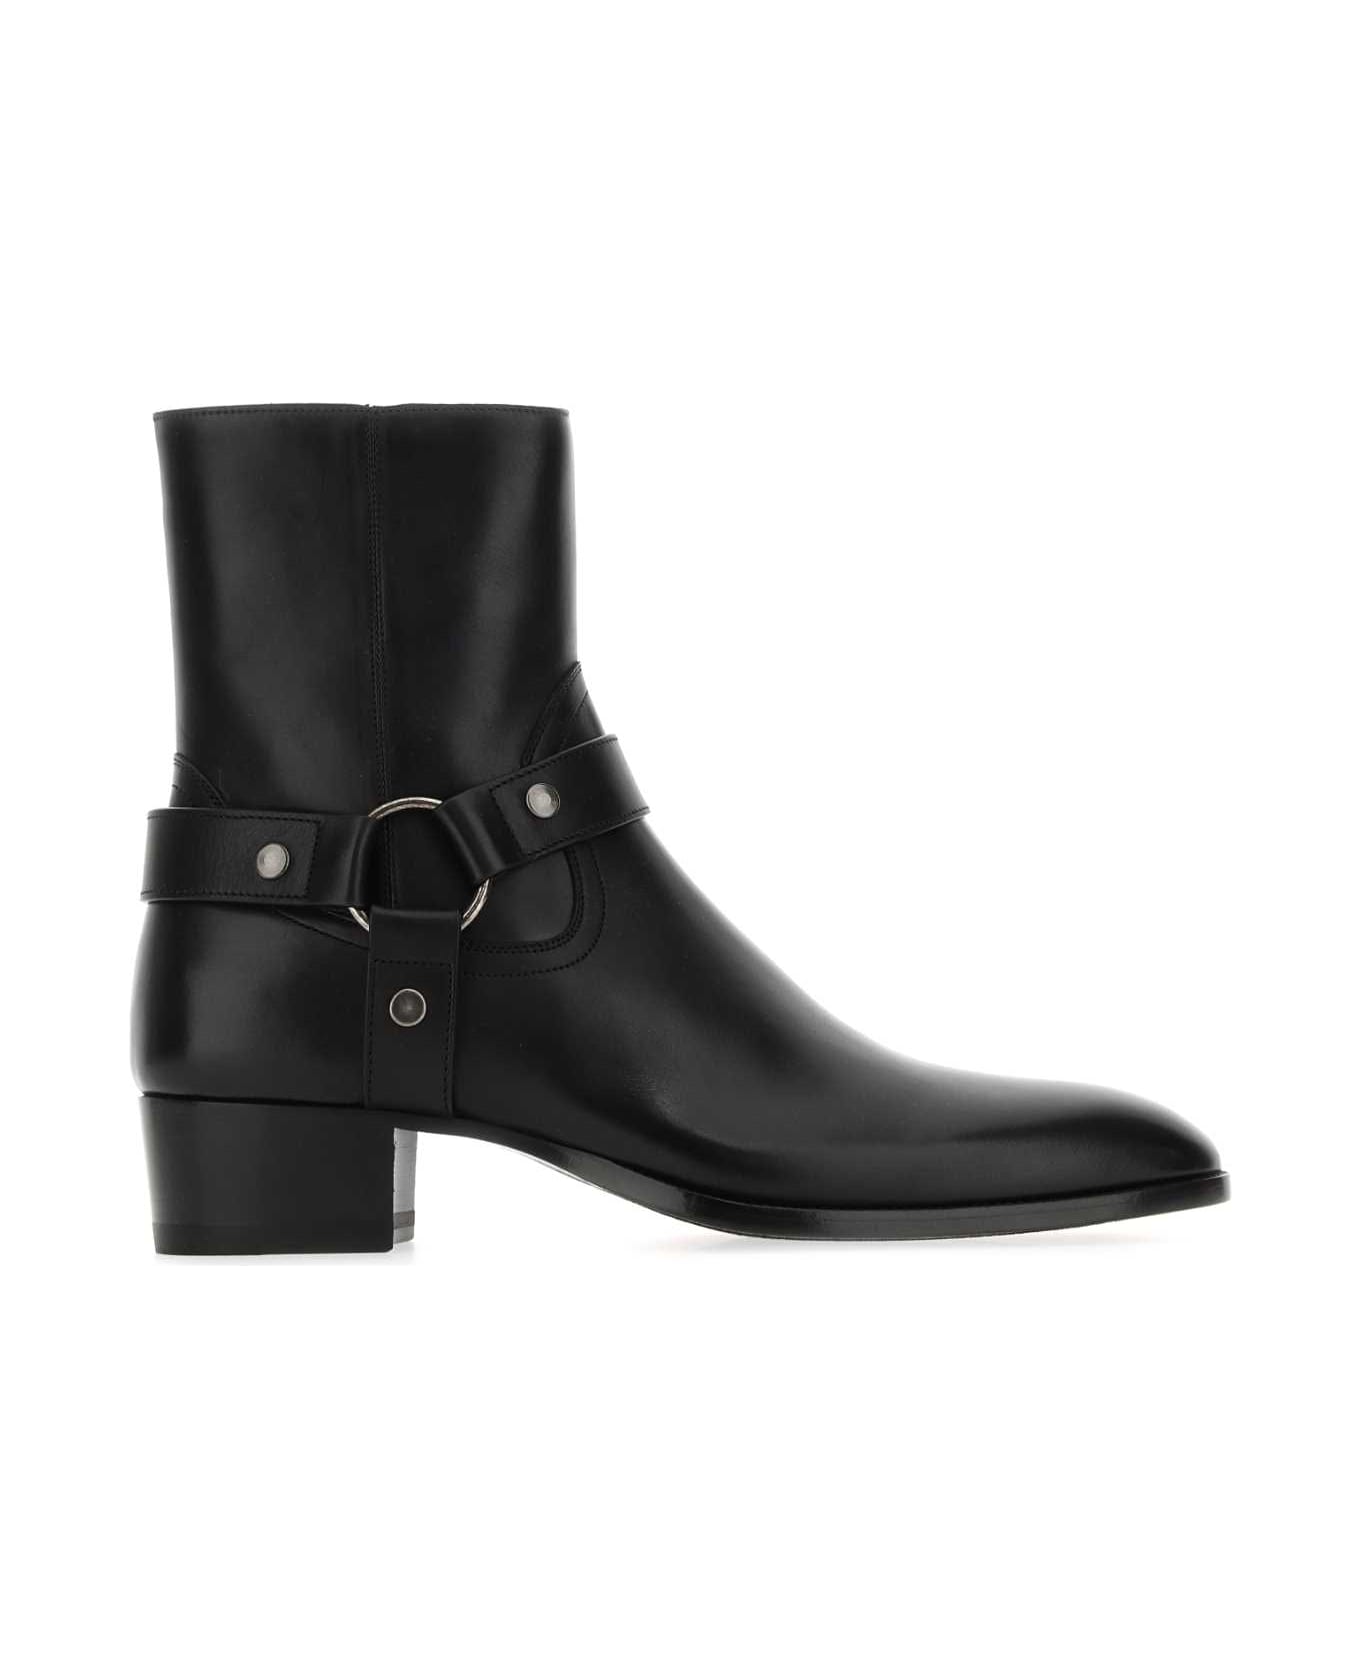 Saint Laurent Black Leather Ankle Boots - 1000